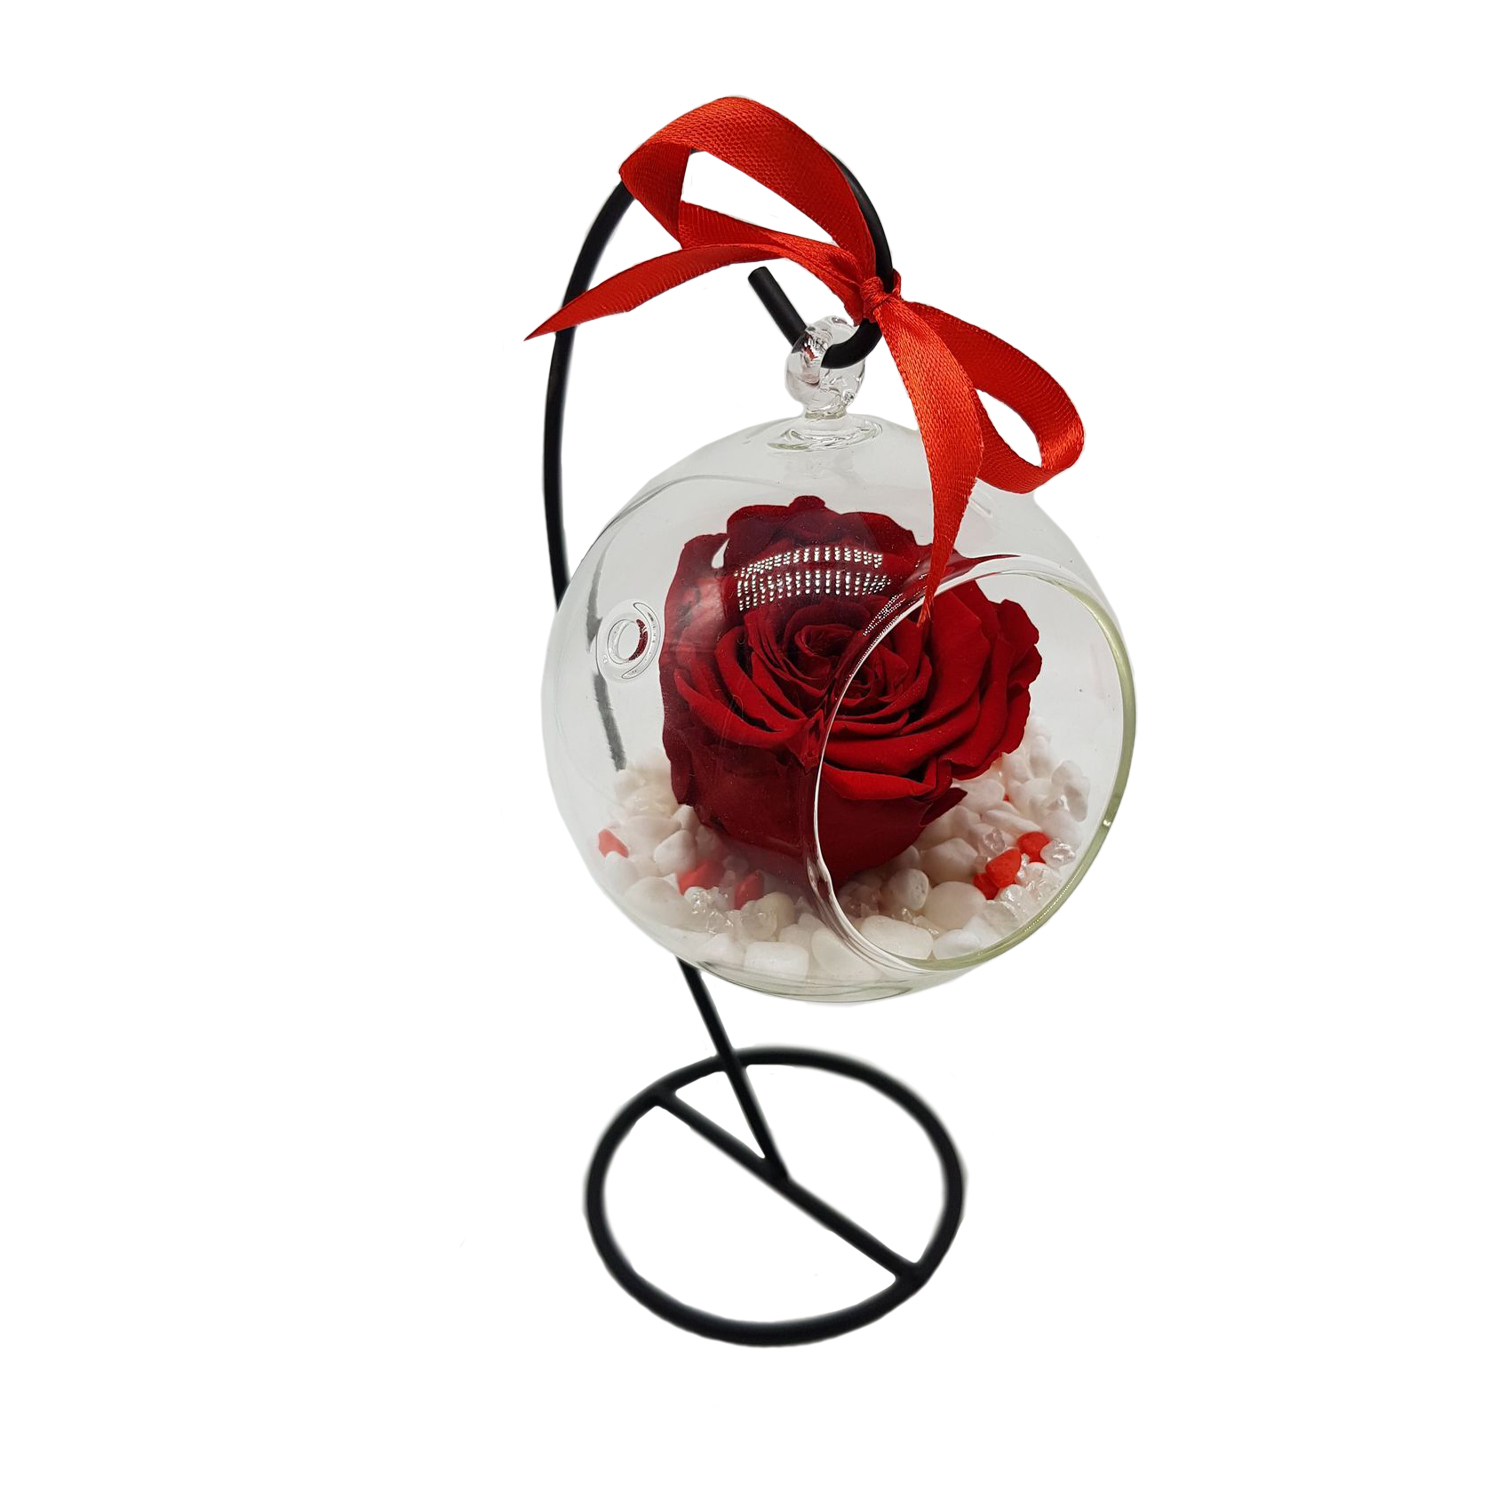 Glob de sticla pe suport metalic, cu trandafir criogenat rosu, Crioflora - Crioflora Aranjamente Florale - Aranjamente Suceava Trandafiri criogenati, stabilizati, licheni, ornamente naturale